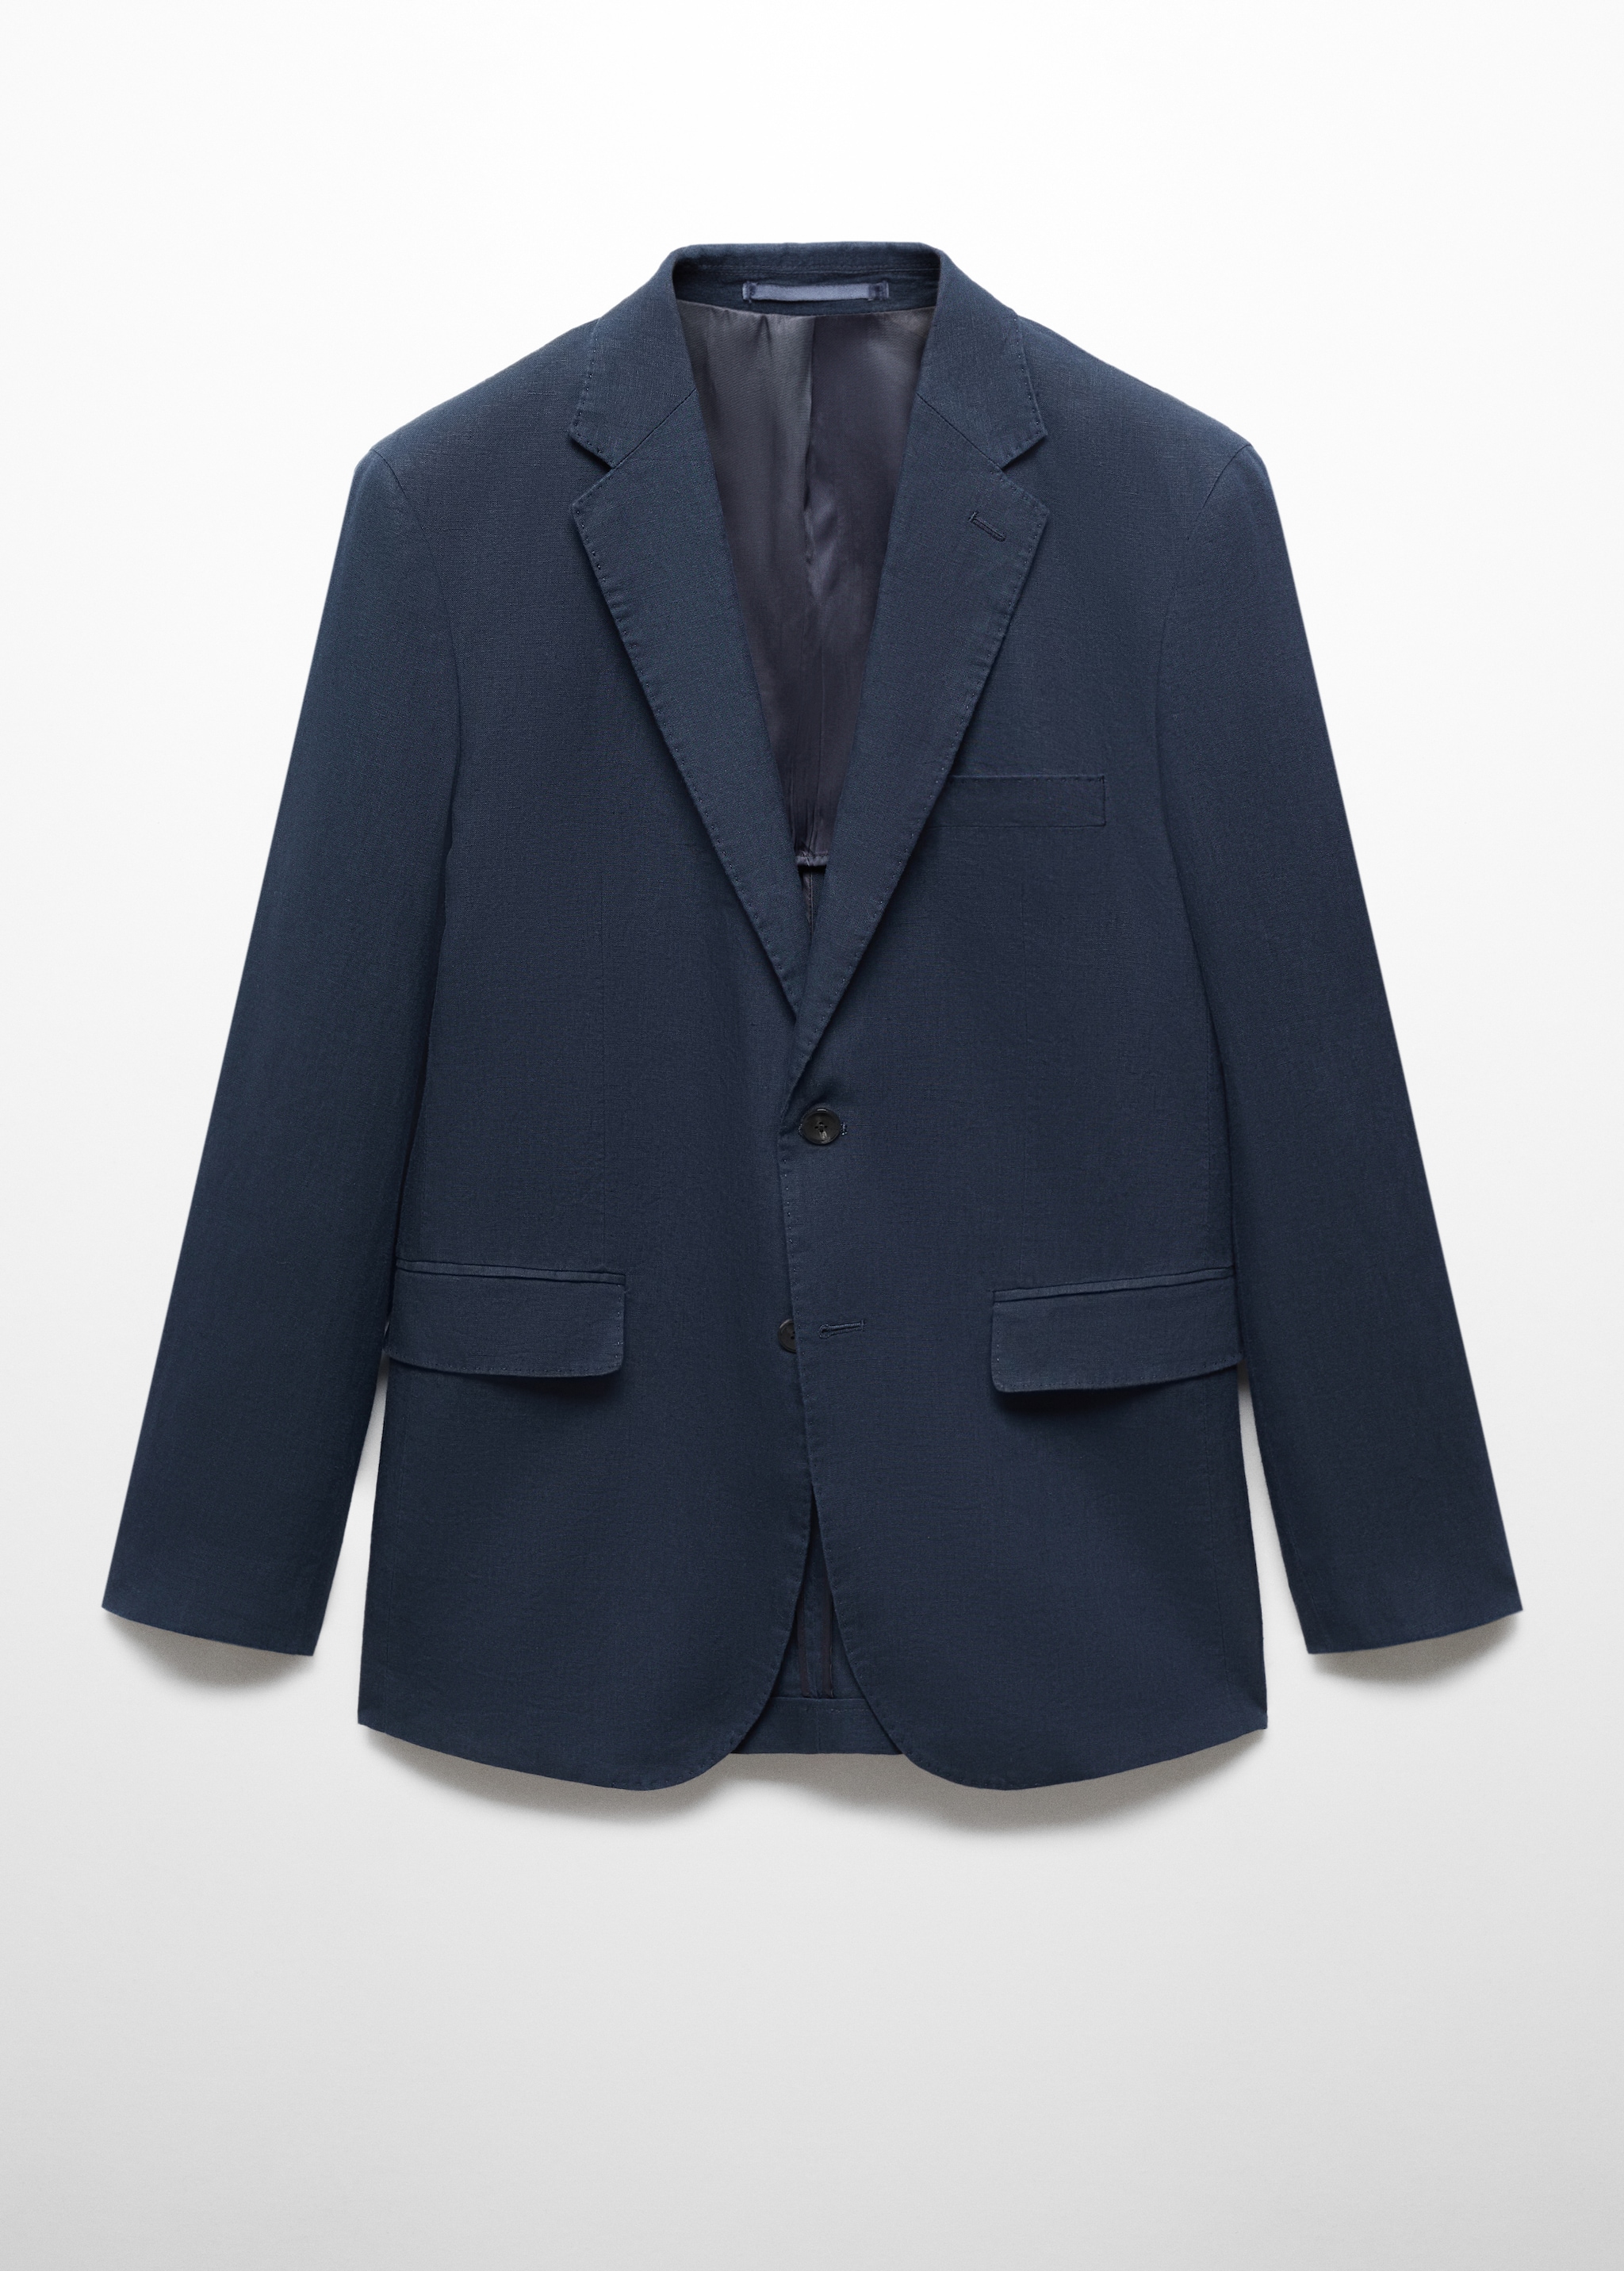 100% linen slim-fit suit jacket - Article without model